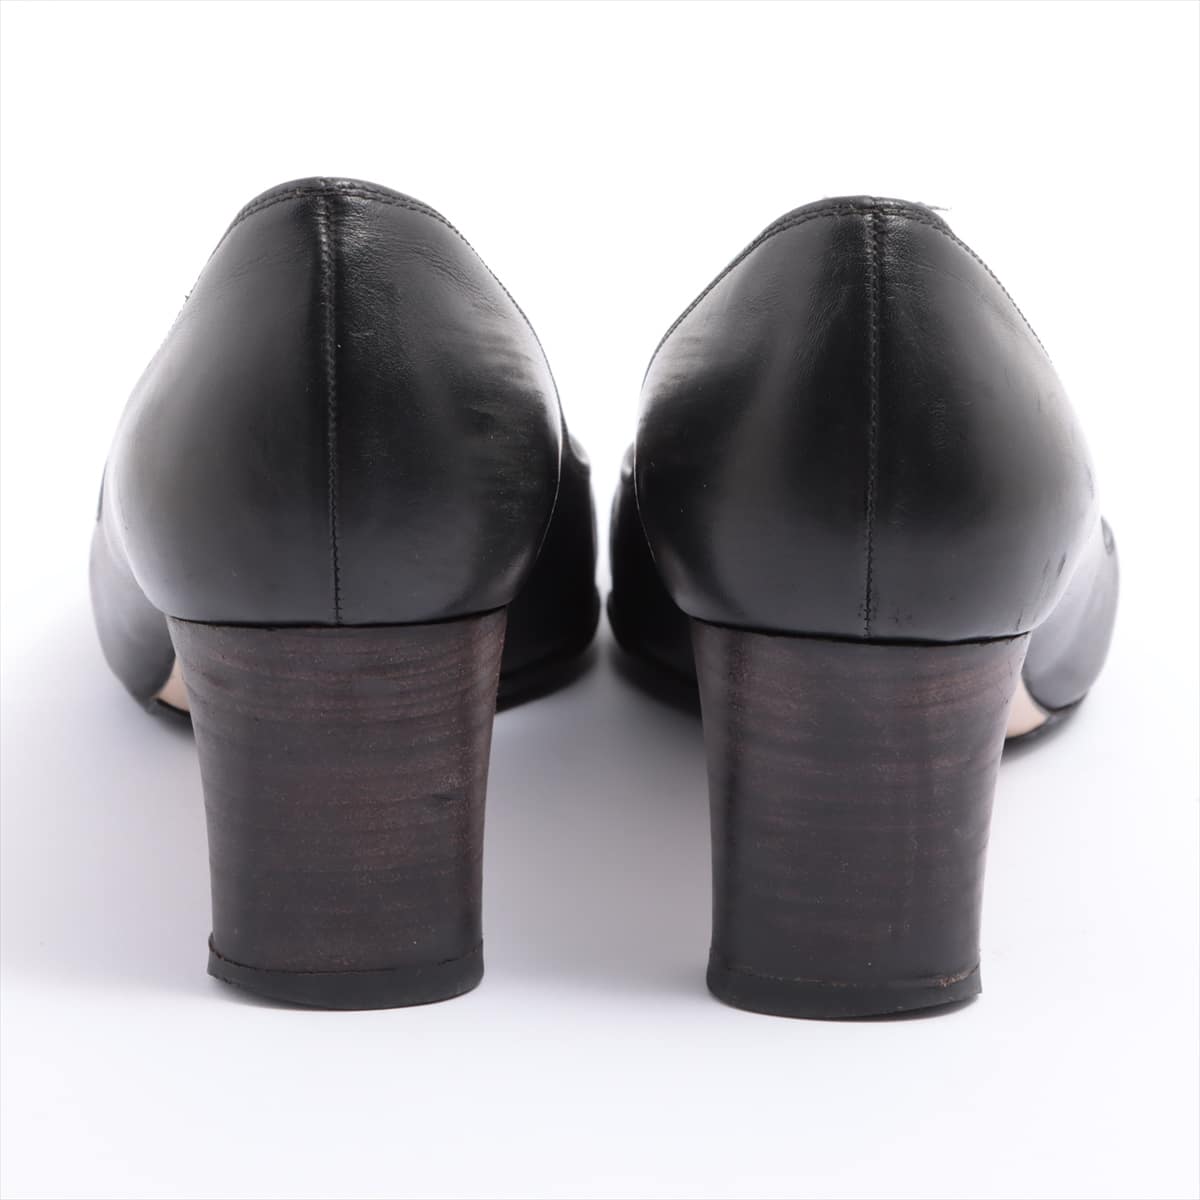 Ferragamo Gancini Leather Pumps 8 C Ladies' Black Sole repair